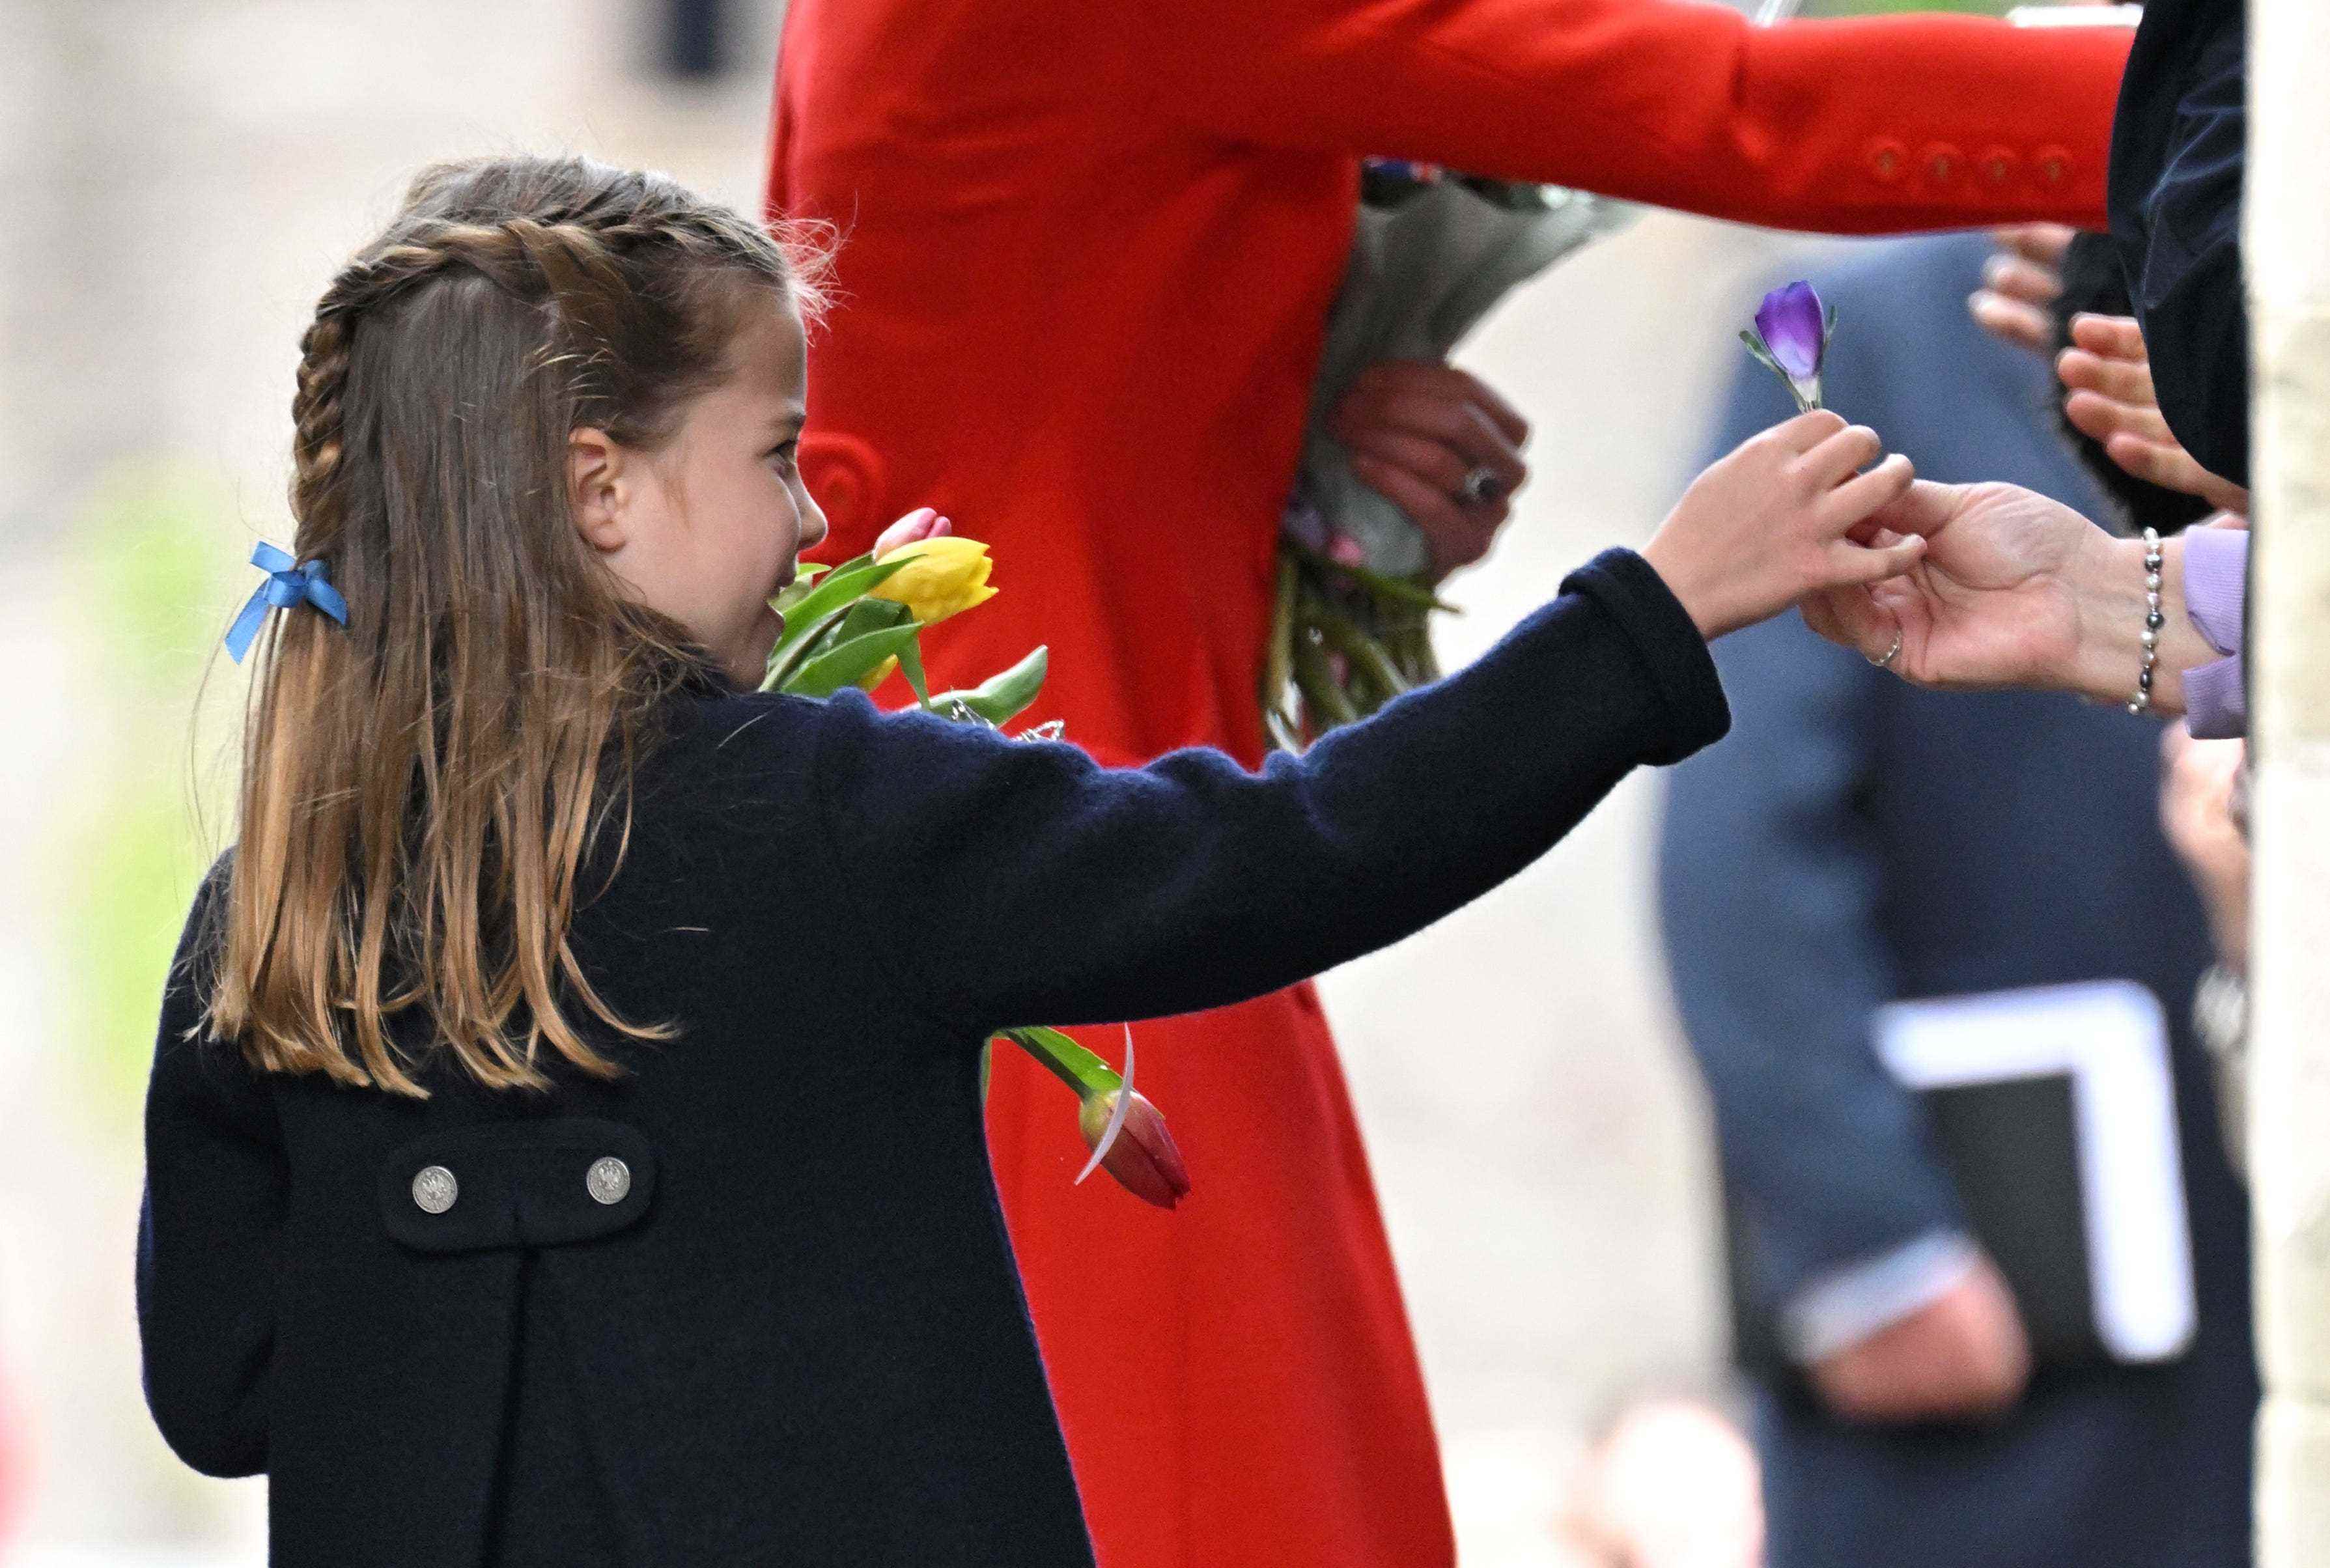 Prinzessin Charlotte überreicht jemandem außerhalb des Bildschirms eine lila Blume